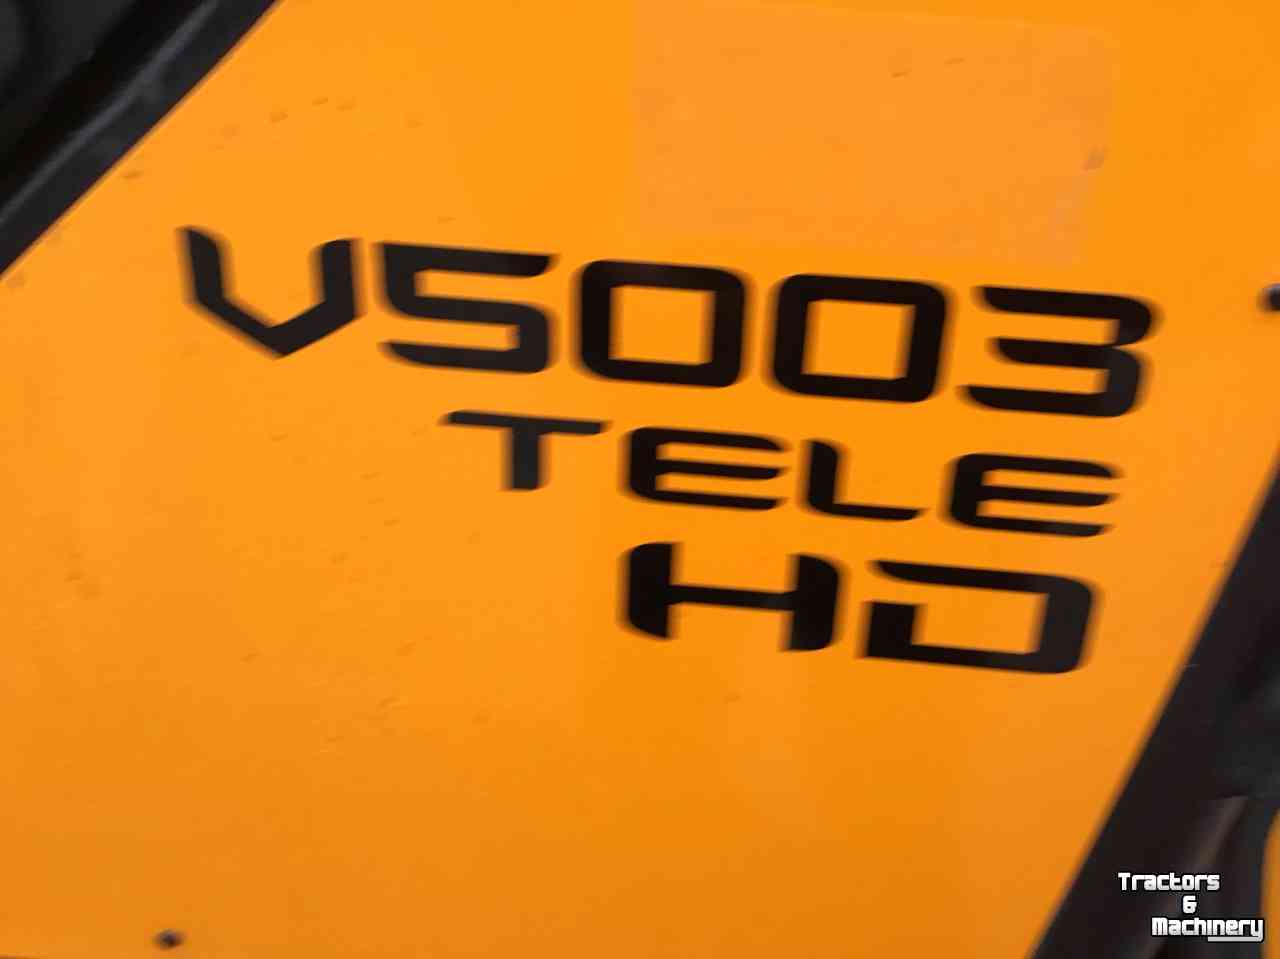 Chargeuse sur pneus Giant V5003 Tele HD